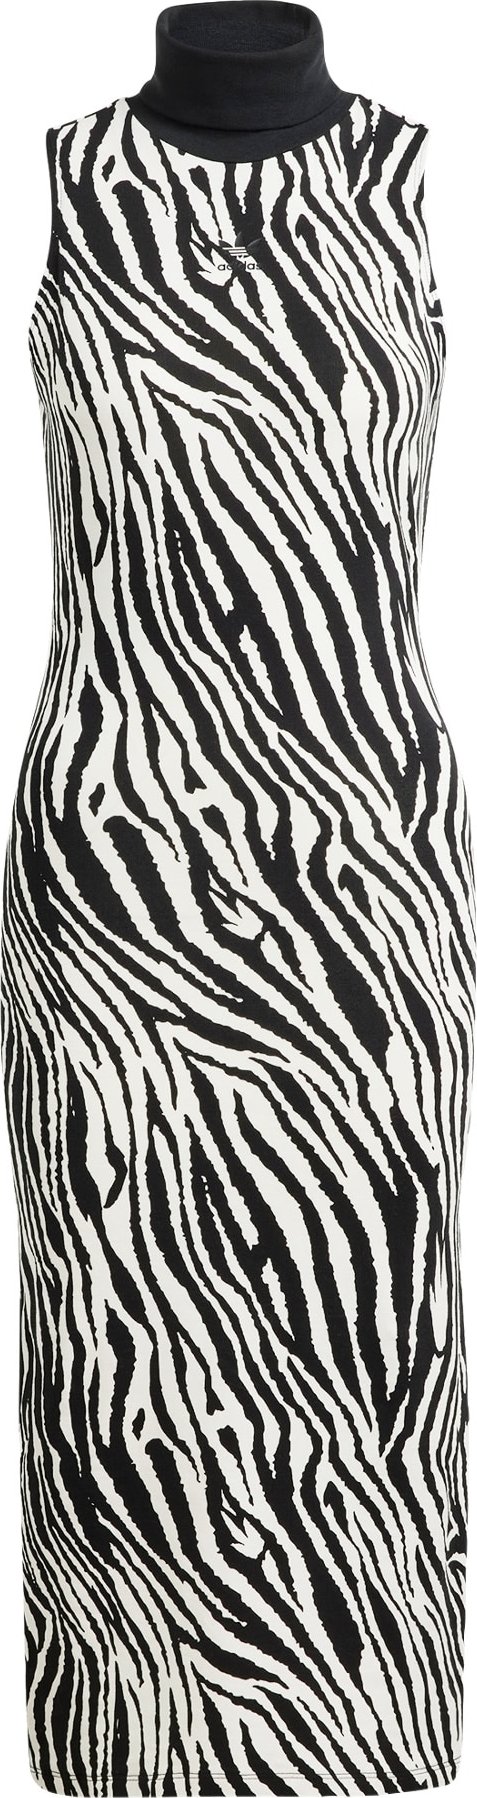 Šaty 'Allover Zebra Animal Print' adidas Originals černá / bílá